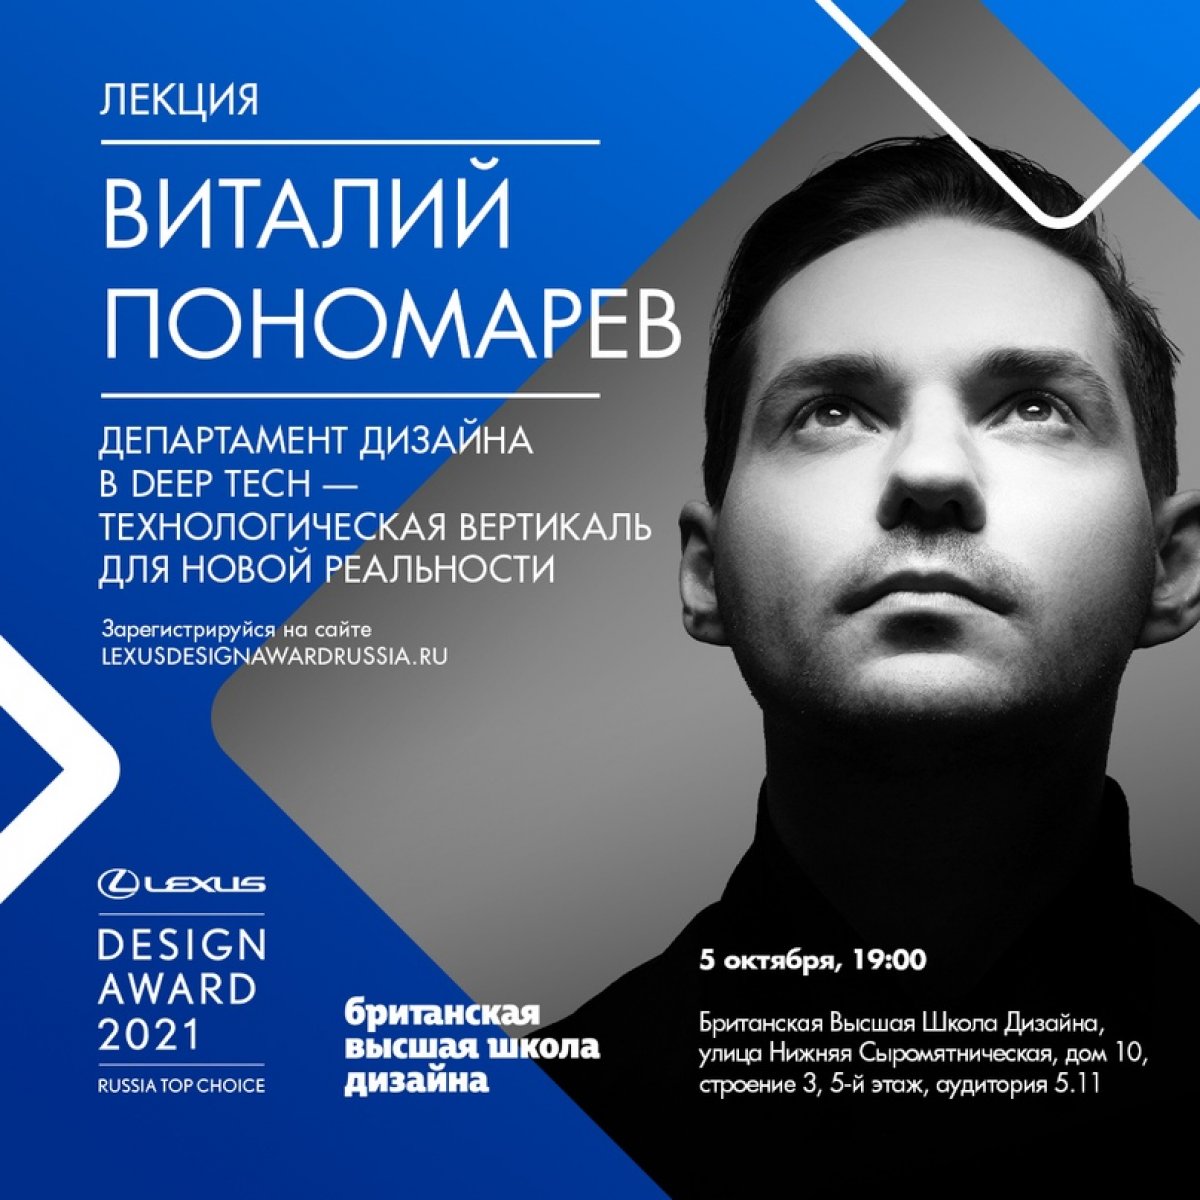 5 октября — лекция Виталия Пономарева в рамках Lexus Design Award Russia Top Choice 2021.